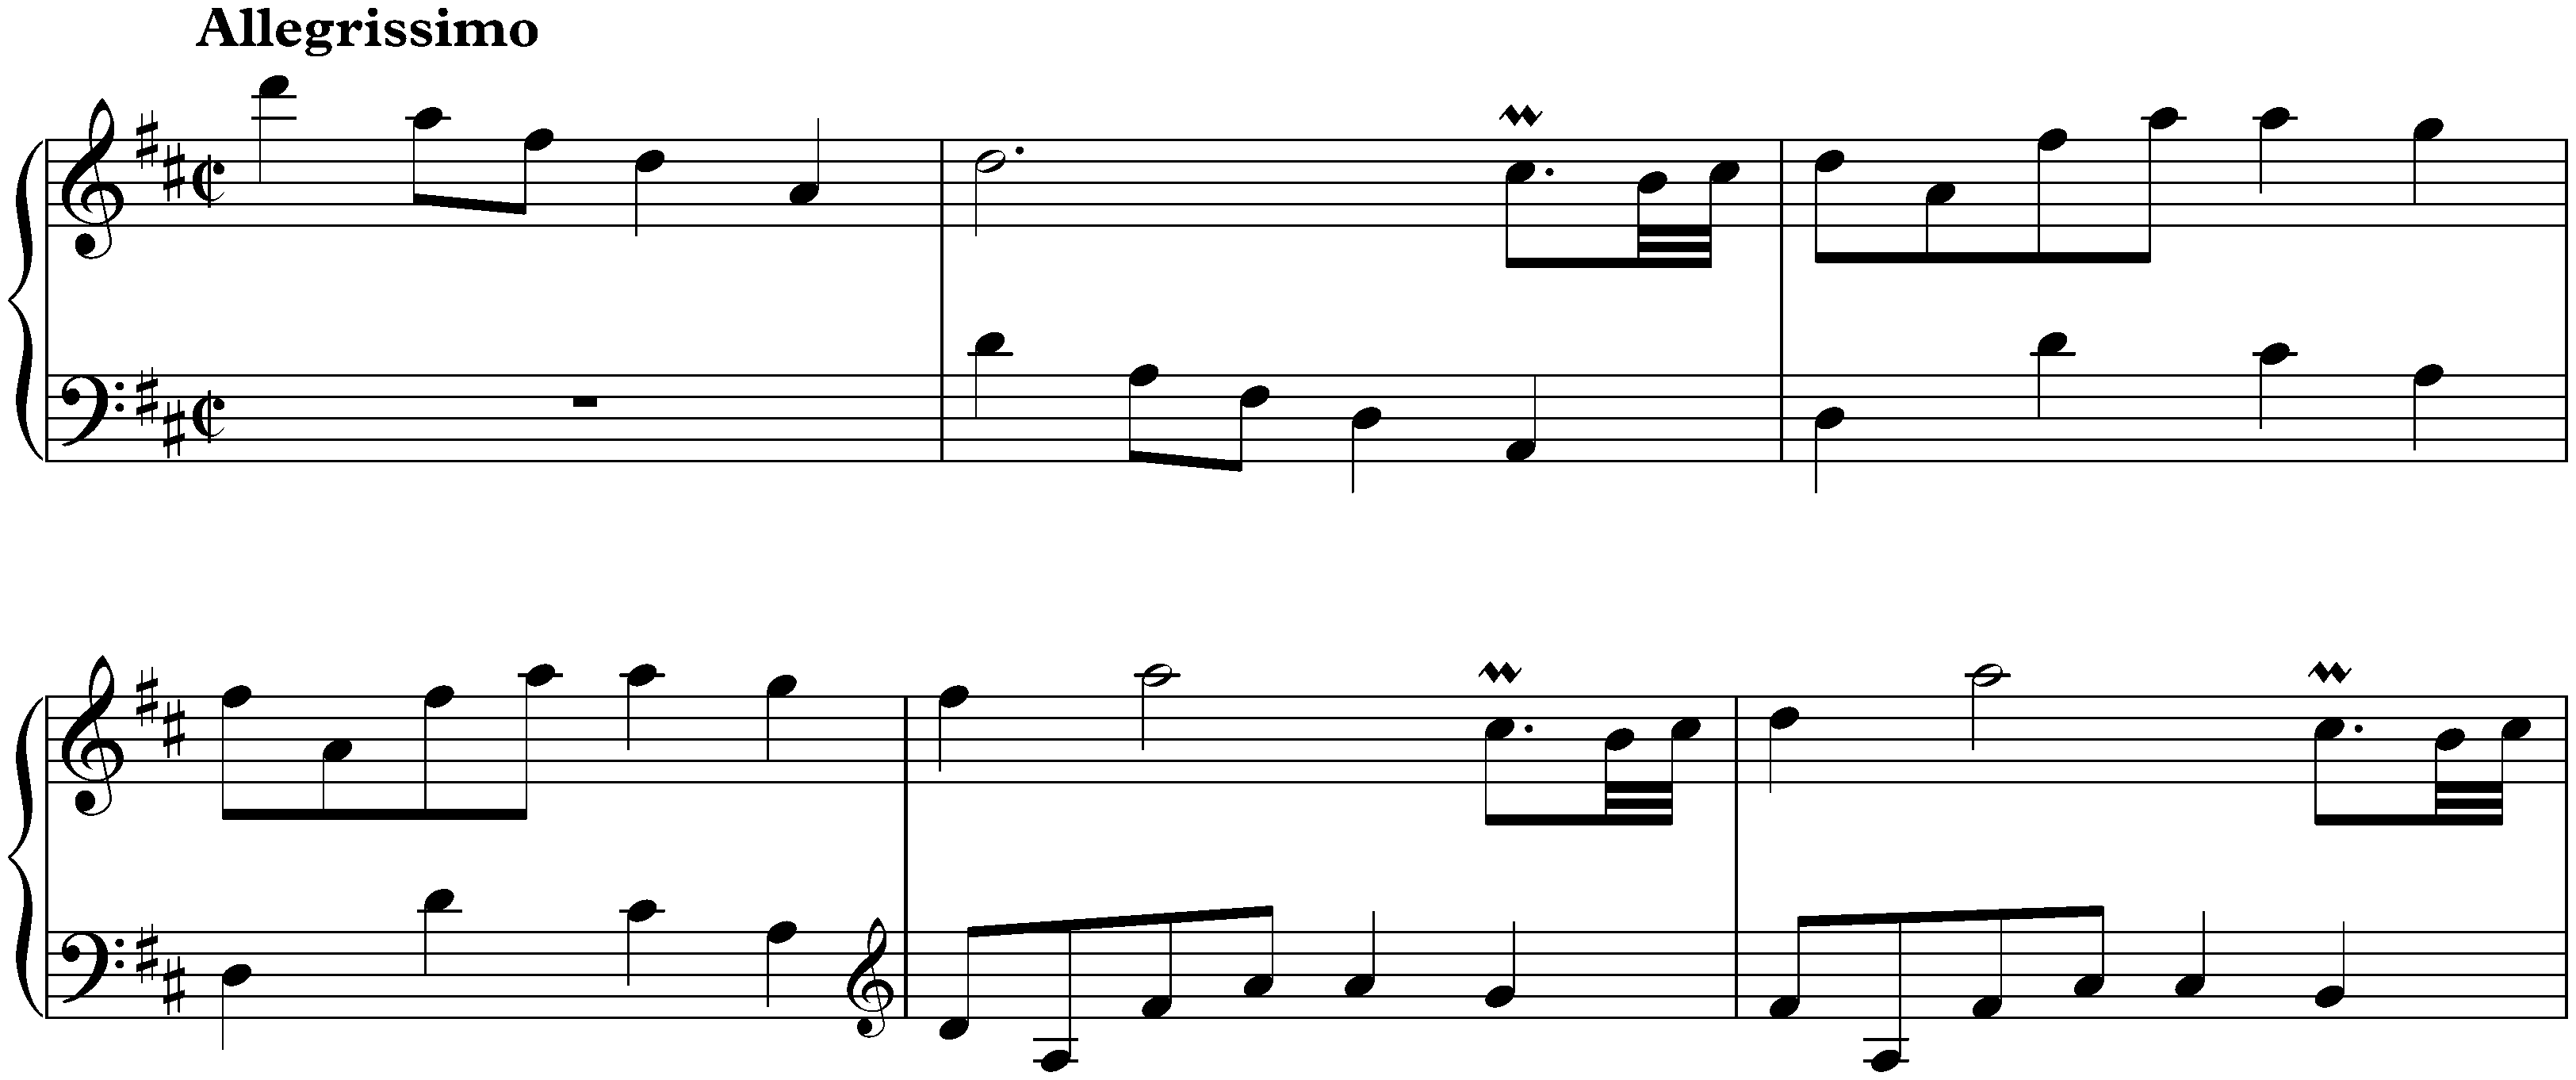 Sonata in D major, K. 479